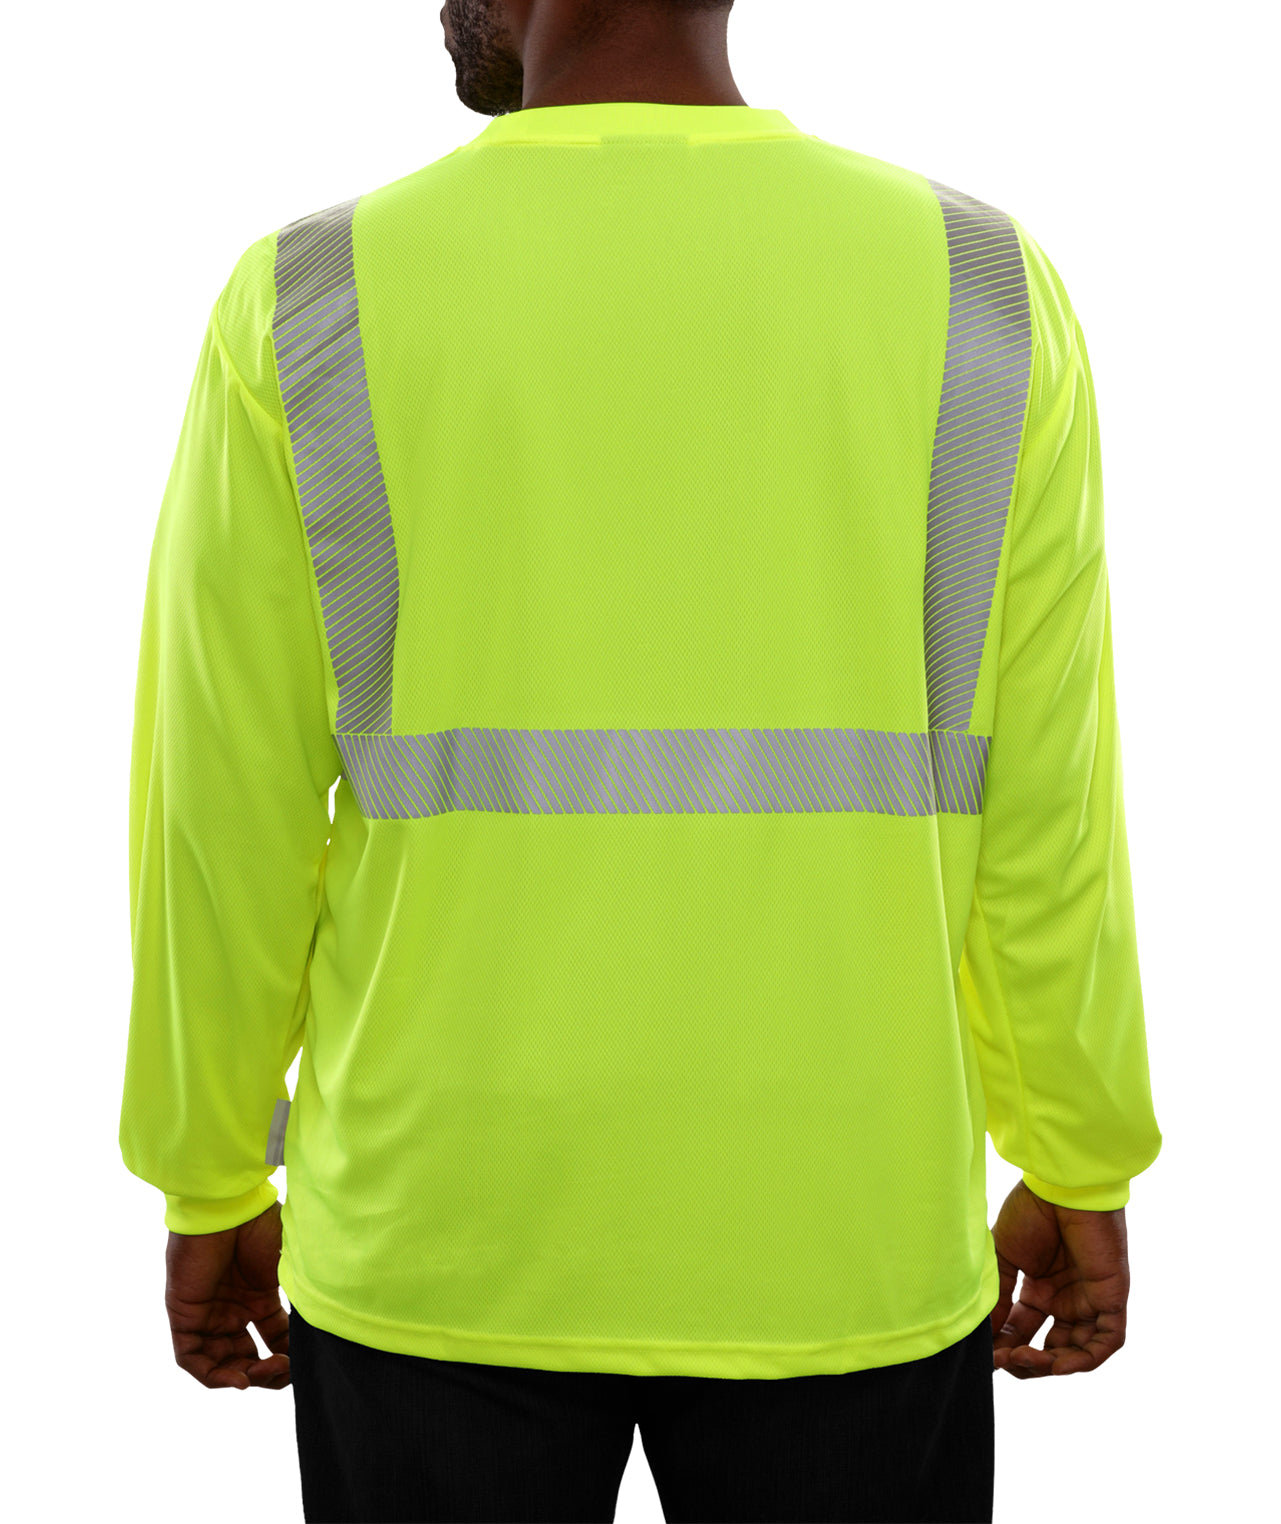 202CTLM Hi-Vis Long Sleeve Lime Birdseye Pocket Safety T-Shirt with 3MTM Comfort Trim